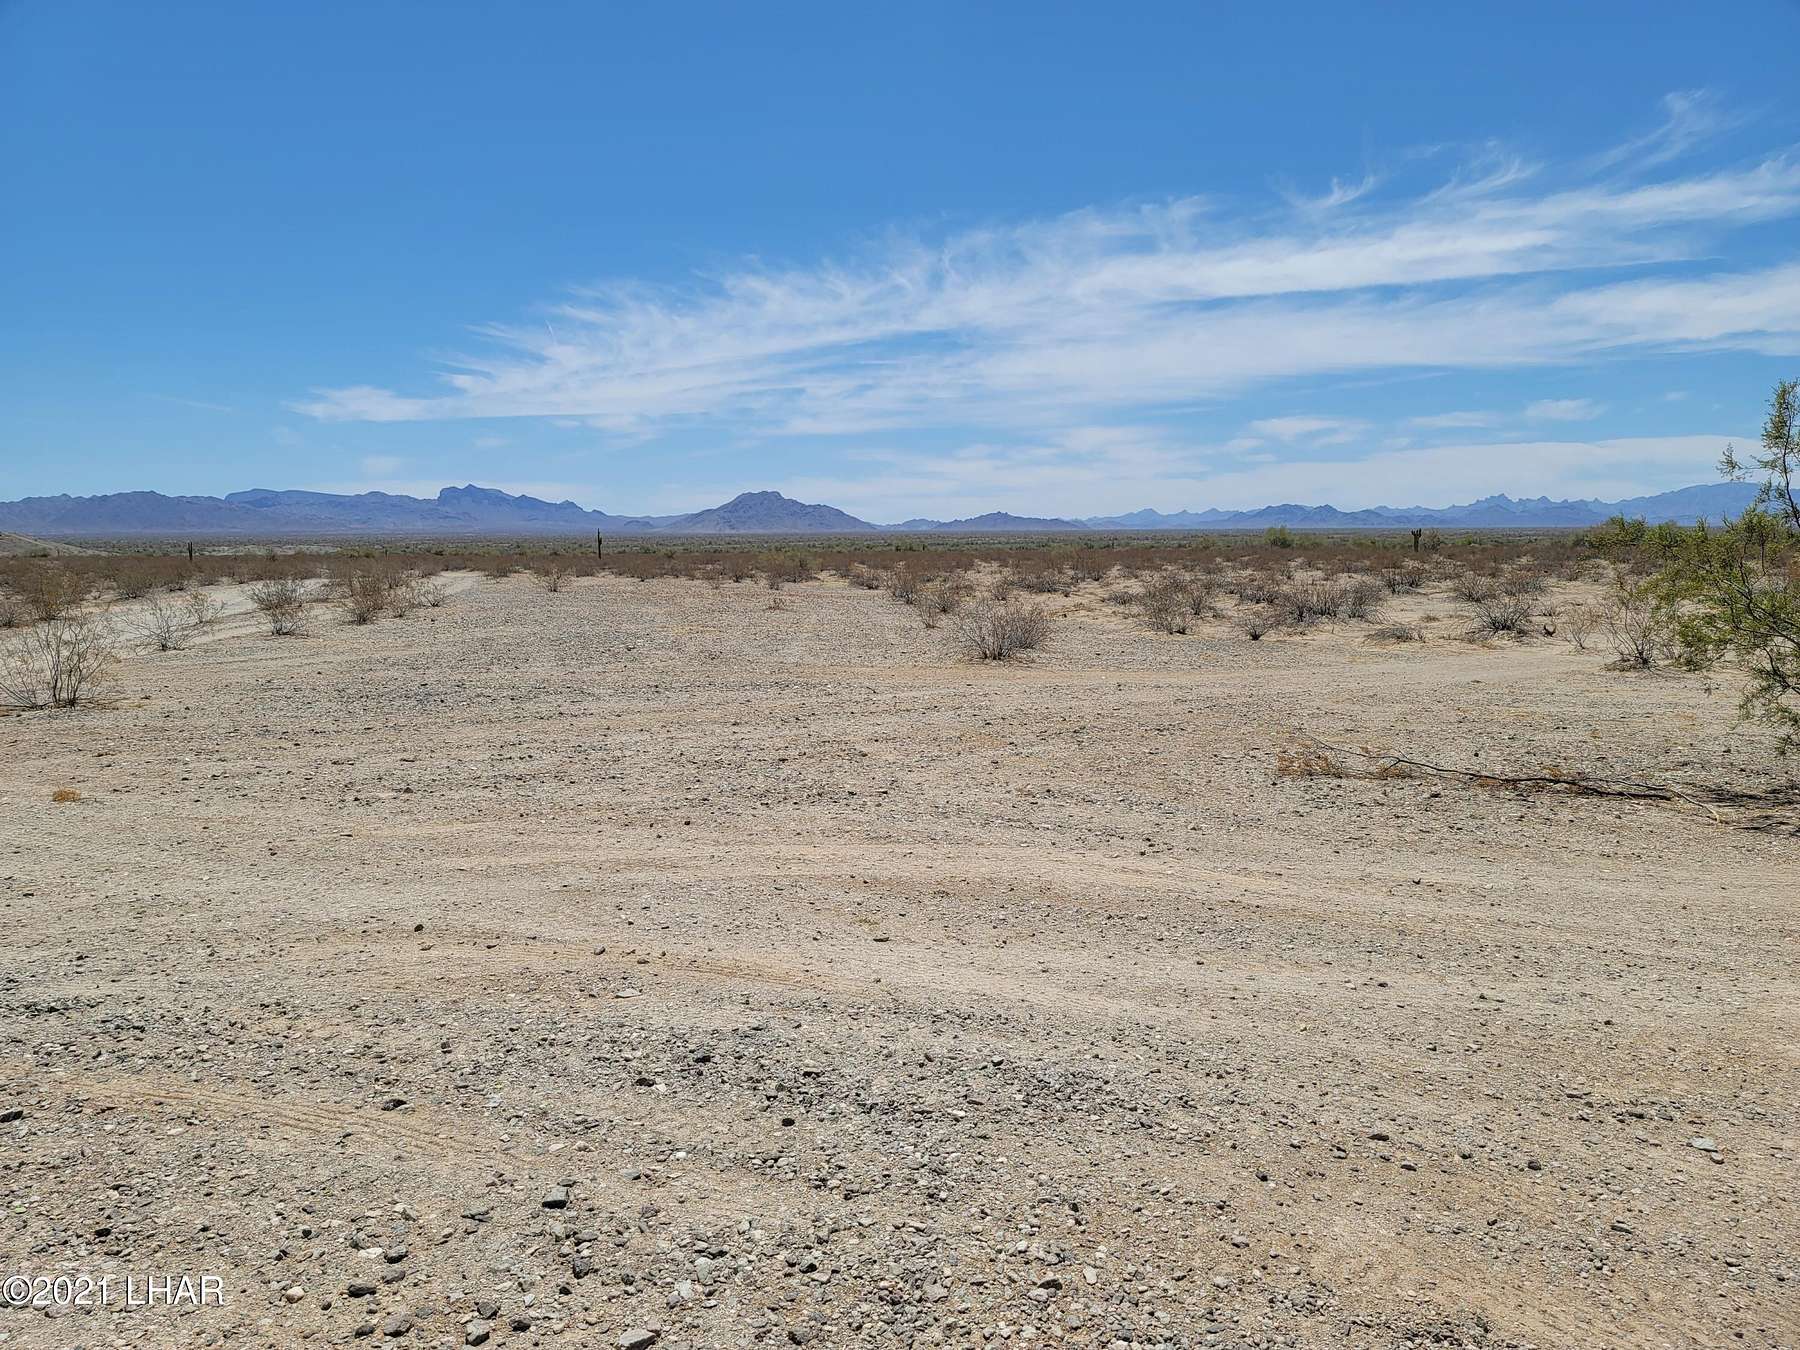 597 Acres of Land for Sale in Quartzsite, Arizona